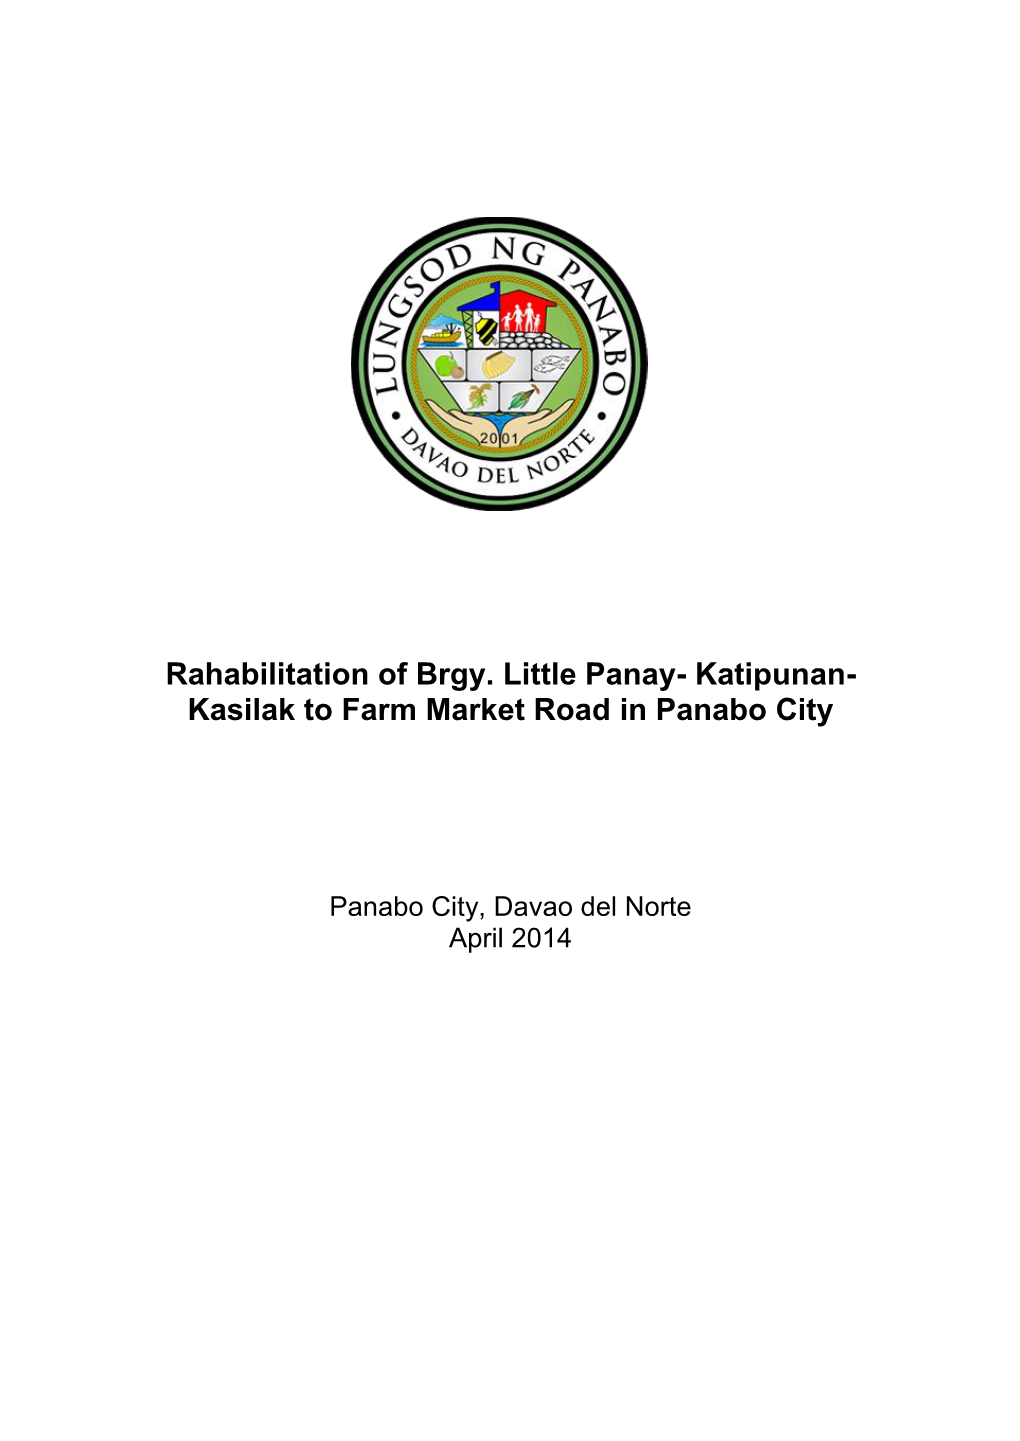 Katipunan- Kasilak to Farm Market Road in Panabo City